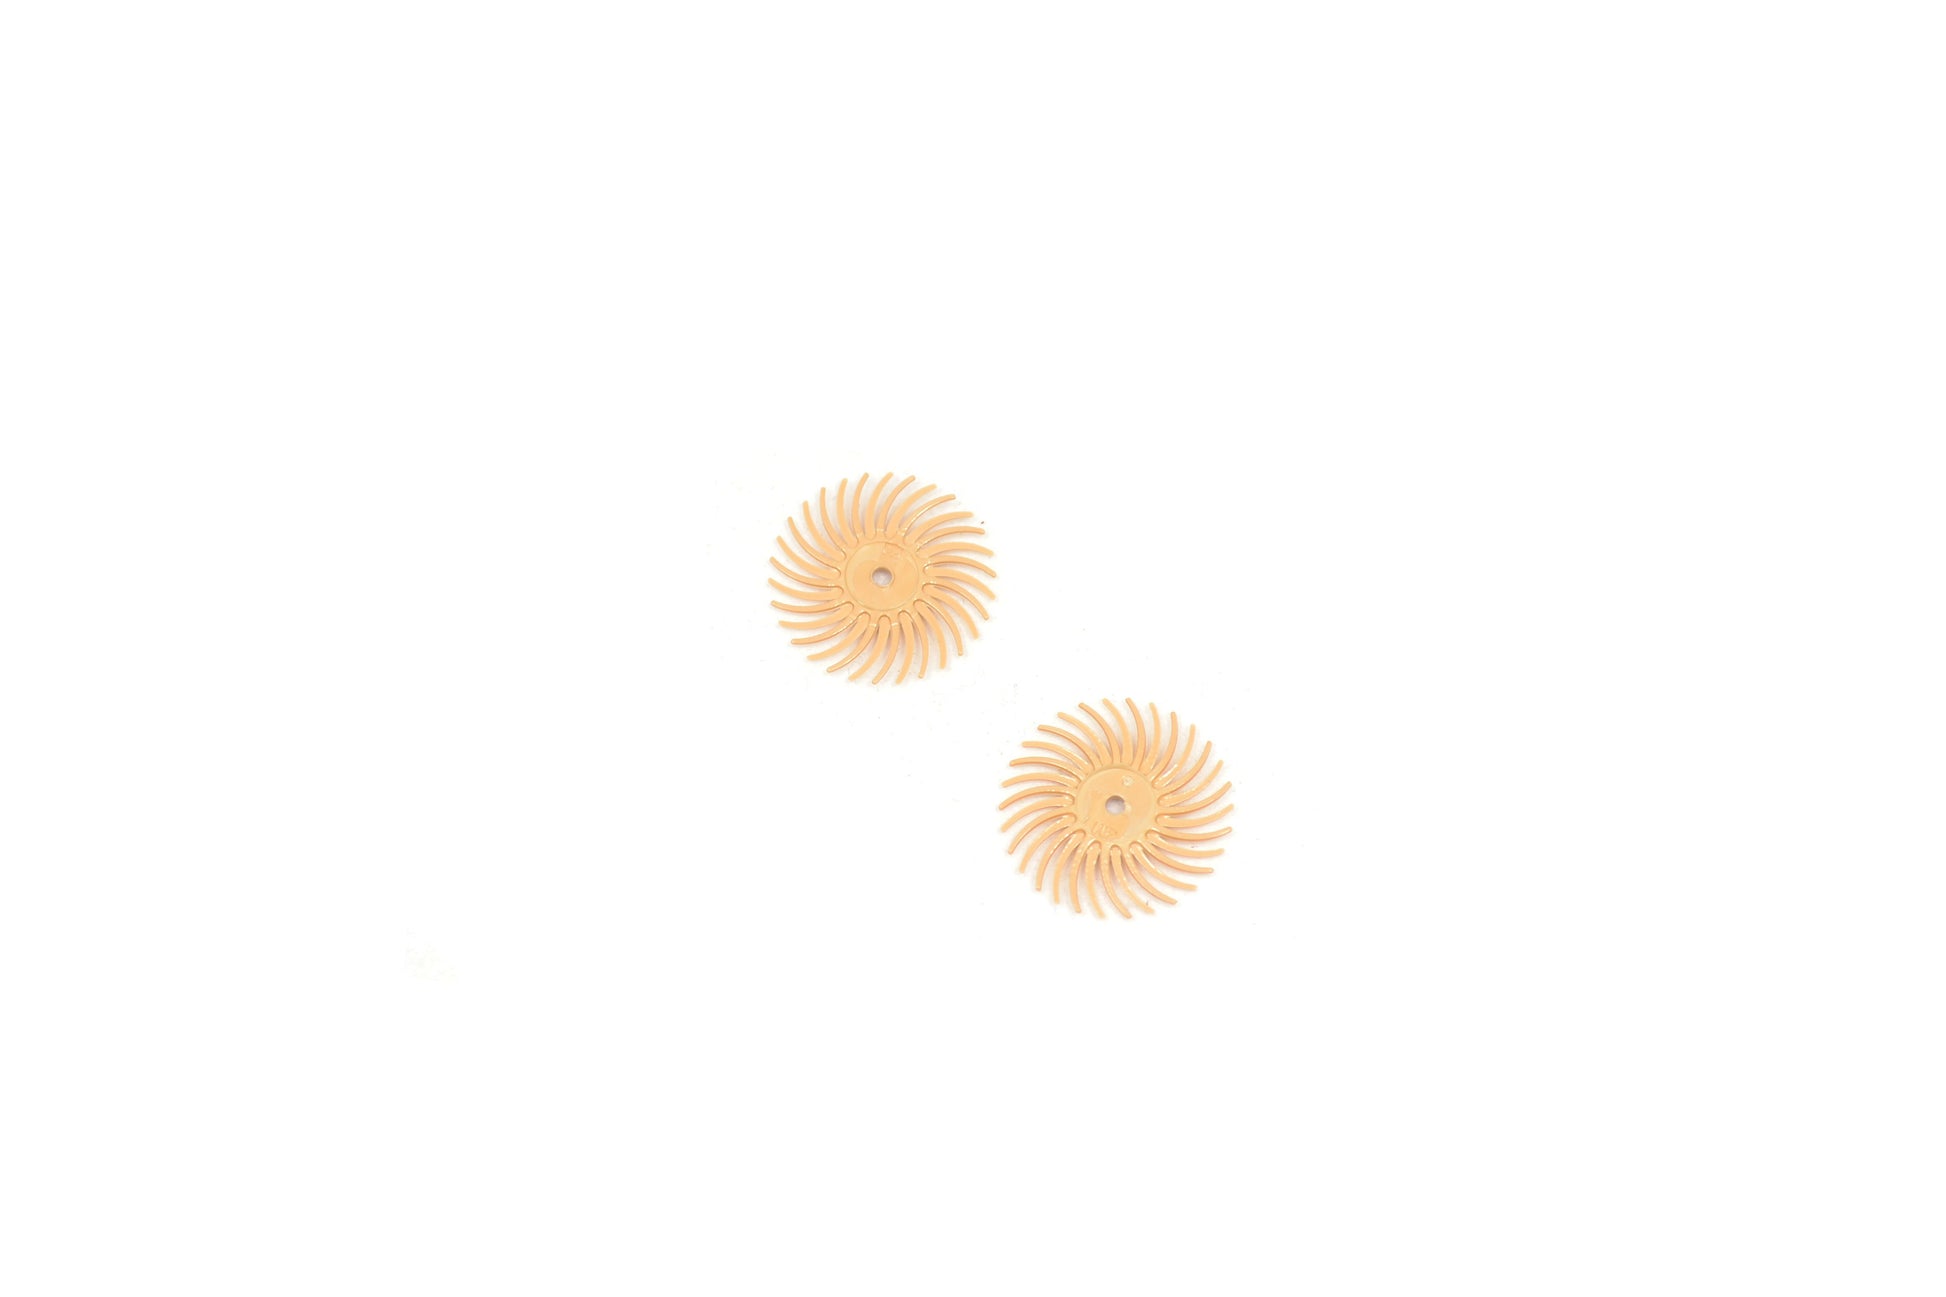 3m 3-radial bristle discs, 3/4" diameter 6 micron peach